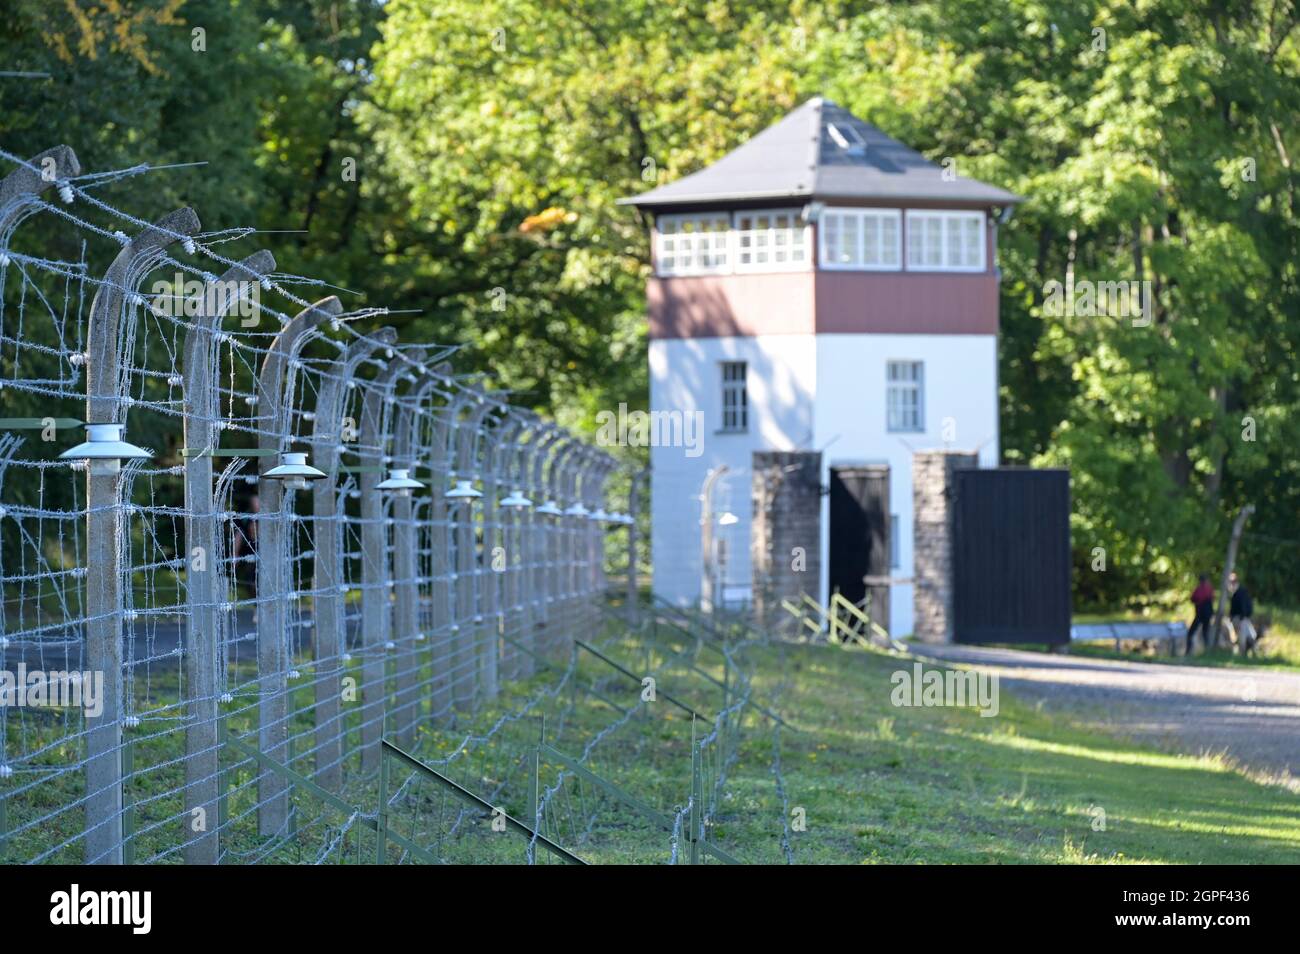 DEUTSCHLAND, Weimar, Nazi-Konzentrationslager Buchenwald 1937-1945 / DEUTSCHLAND, Weimar, Konzentrationslager KZ Buchenwald, war eines der größten Konzentrationslager auf deutschem Boden. Es wurde zwischen Juli 1937 und April 1945 auf dem Ettersberg bei Weimar von der SS betrieben Stockfoto